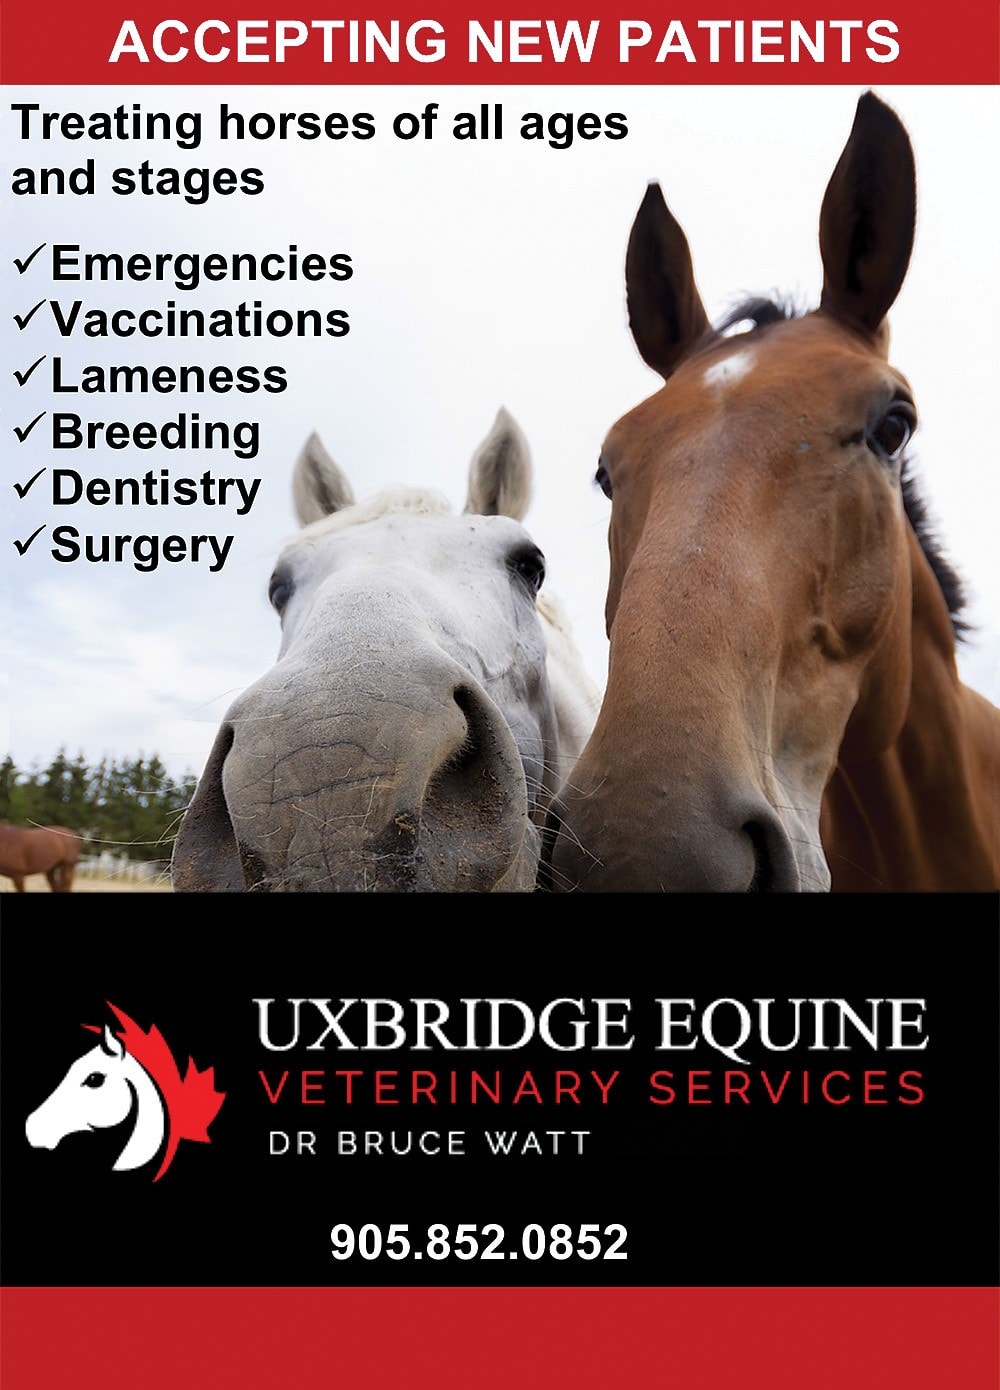 Uxbridge Equine Veterinary Services